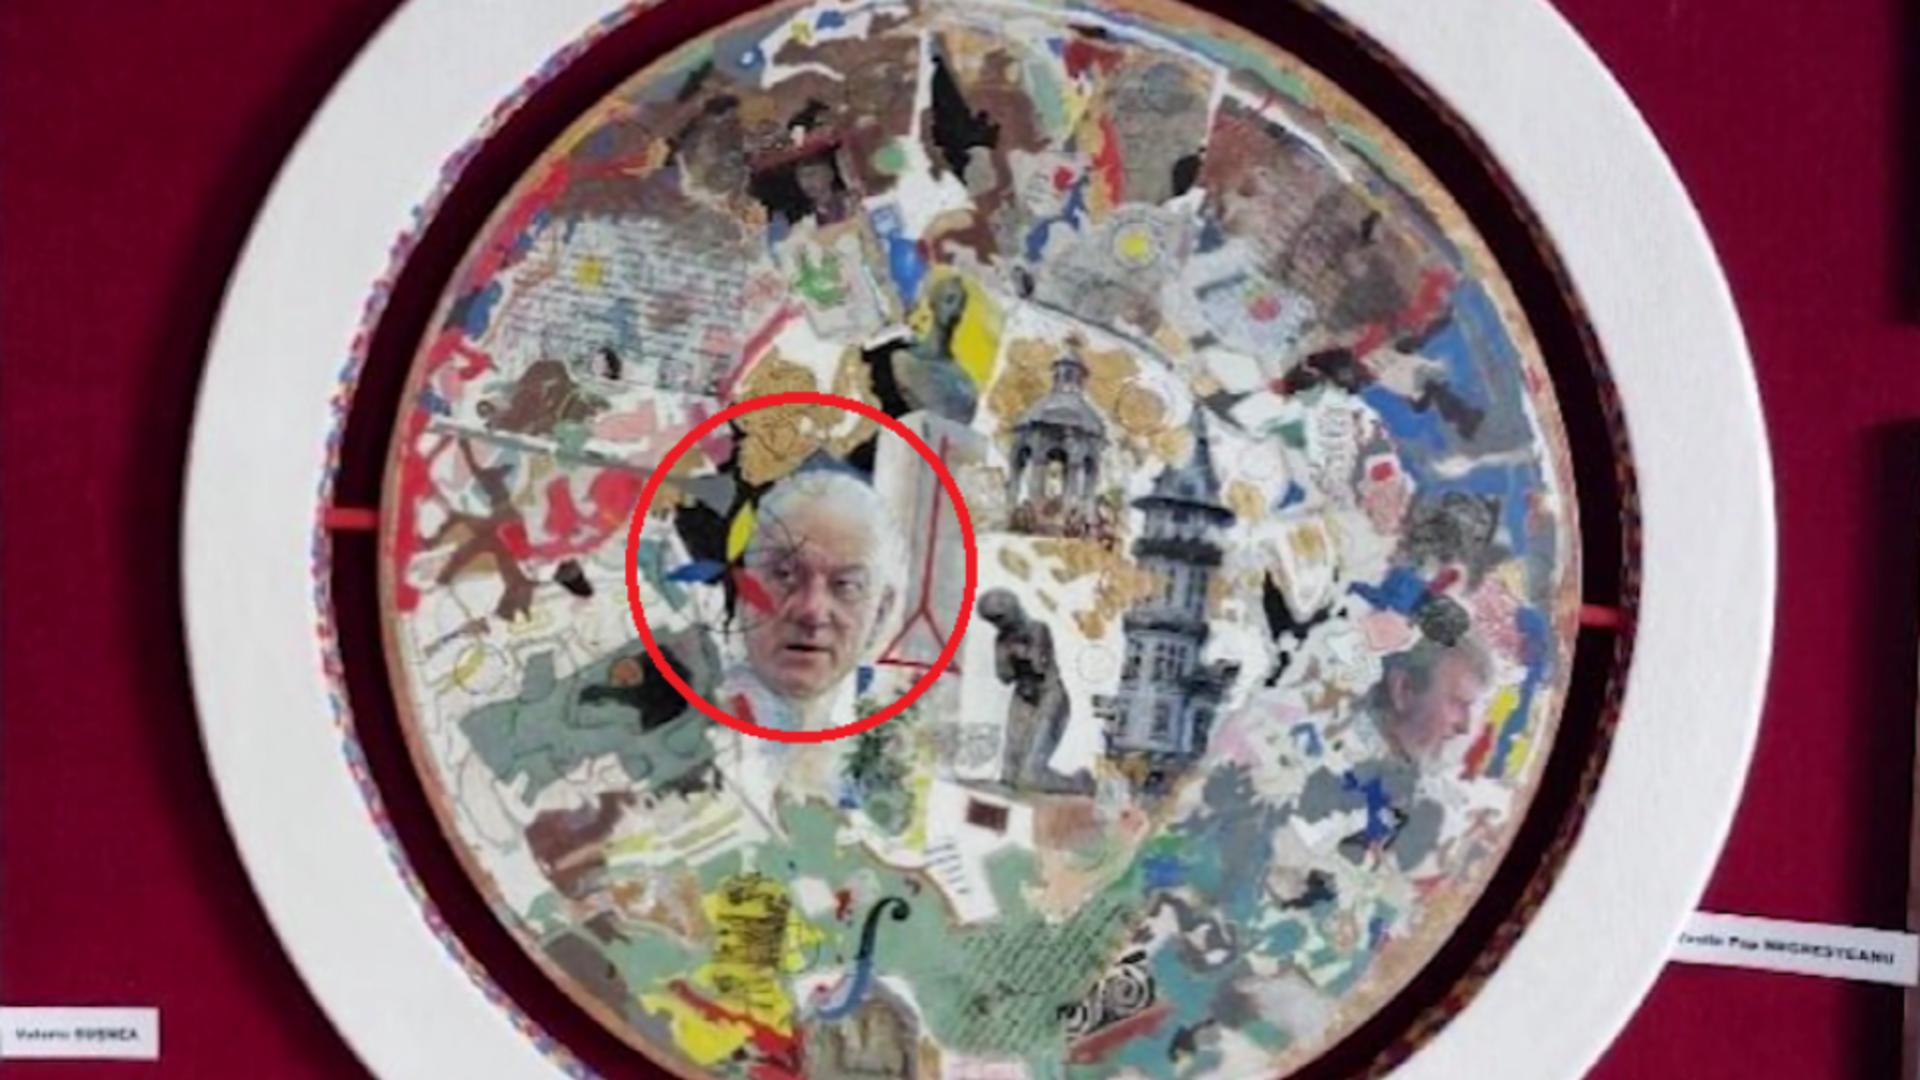 Chipul primarului Buzăului, pictat și expus la o galerie de artă! Explicația halucinantă a artistului: “Este la fel de important ca Michelangelo…”